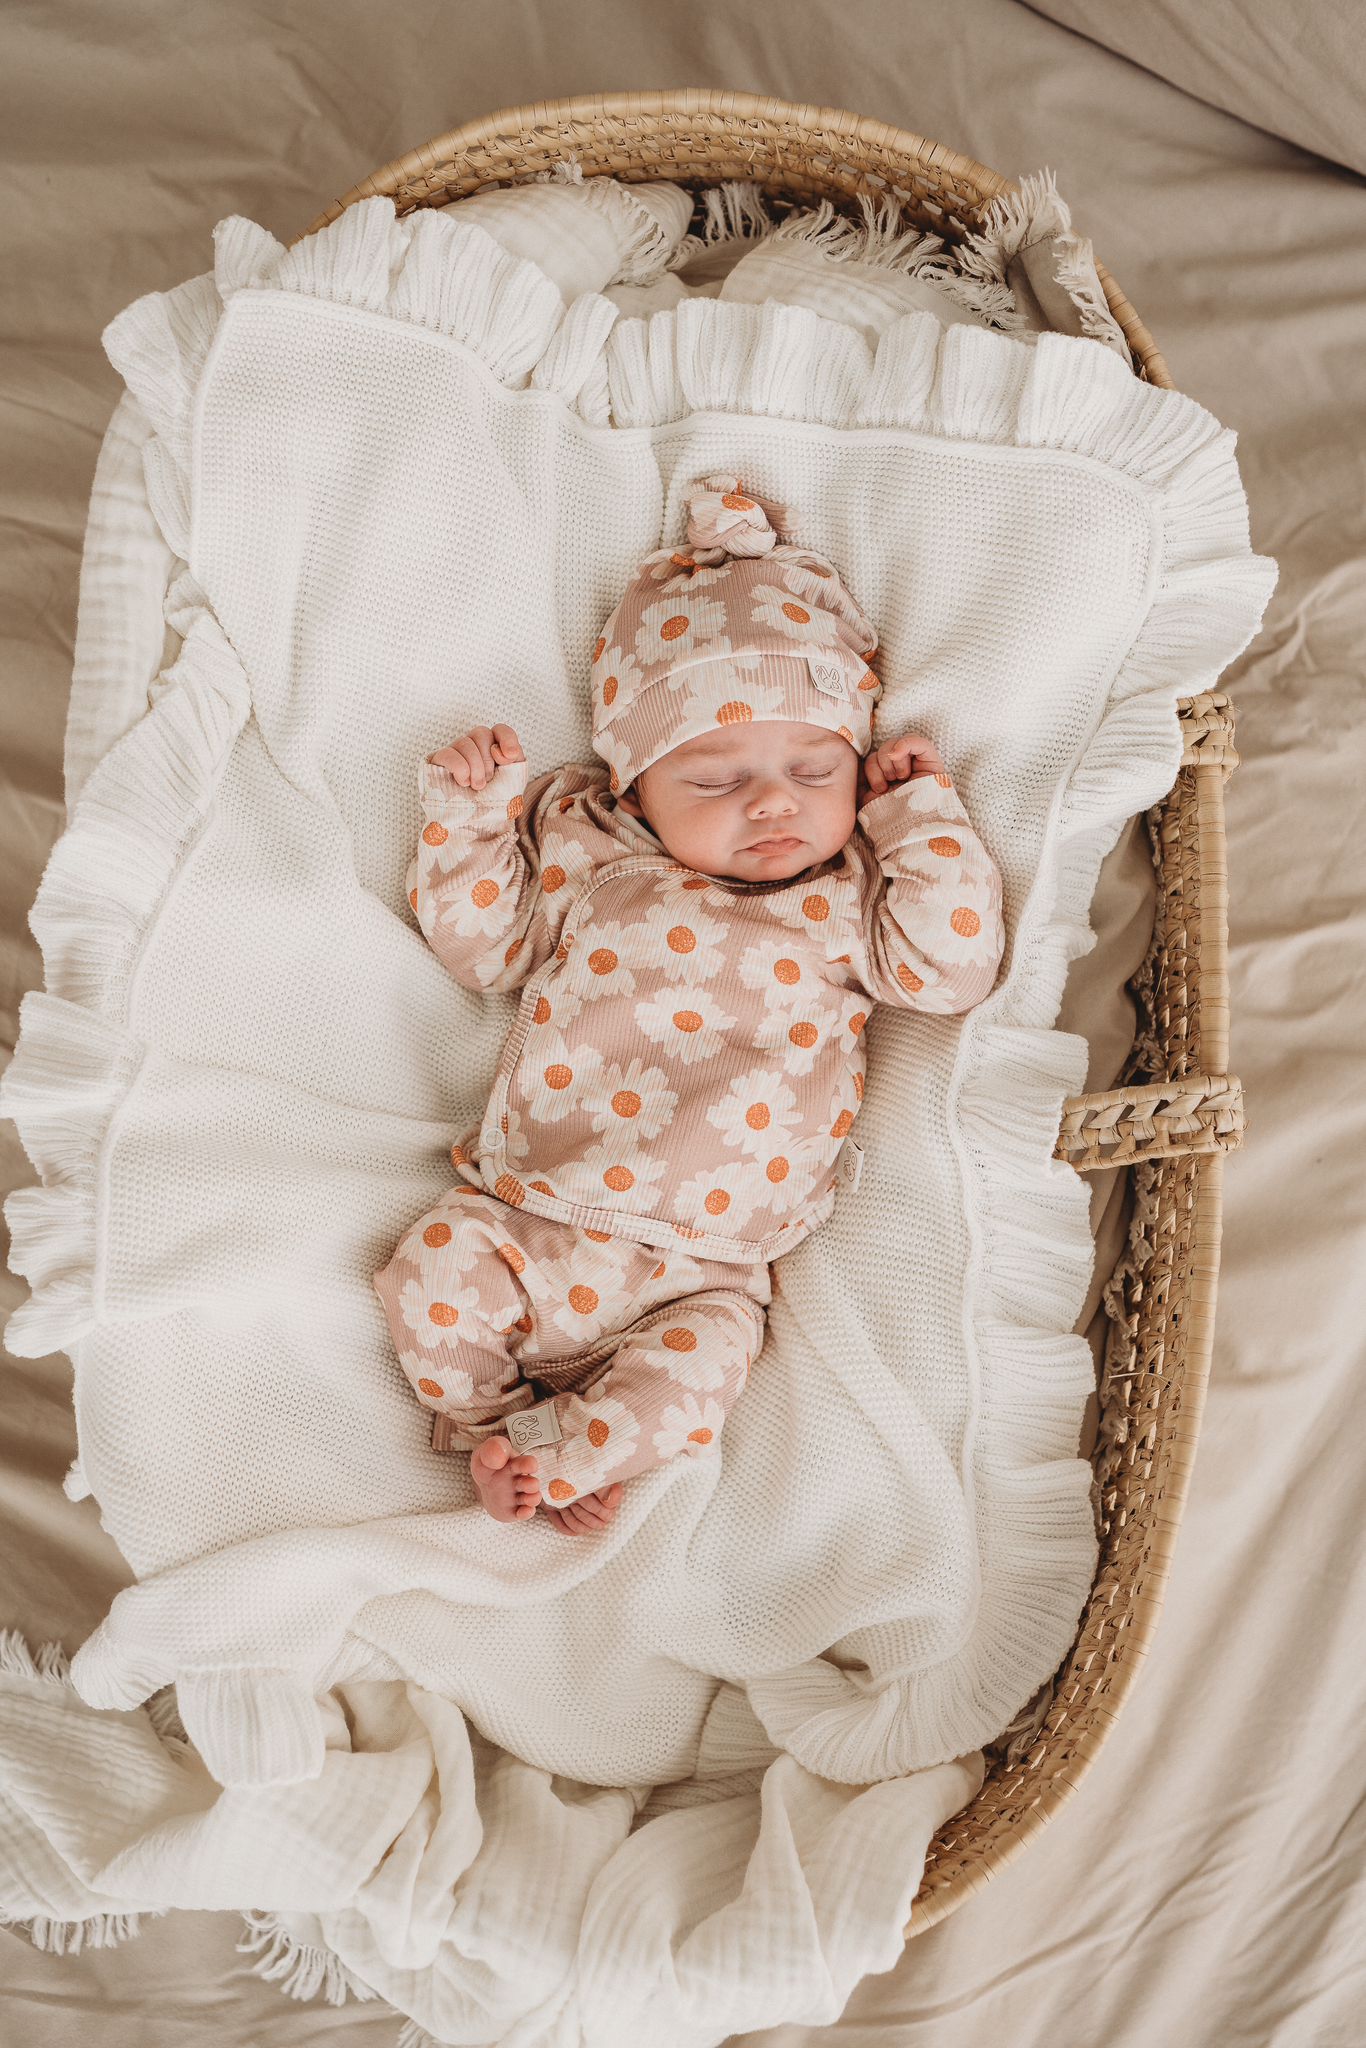 Een serene newborn slaapt vredig in een knus rieten mandje, gekleed in een schattige onesie met een bijpassend Yumi Baby pasgeboren babymutsje, omringd door een zachte, crèmekleurige deken.